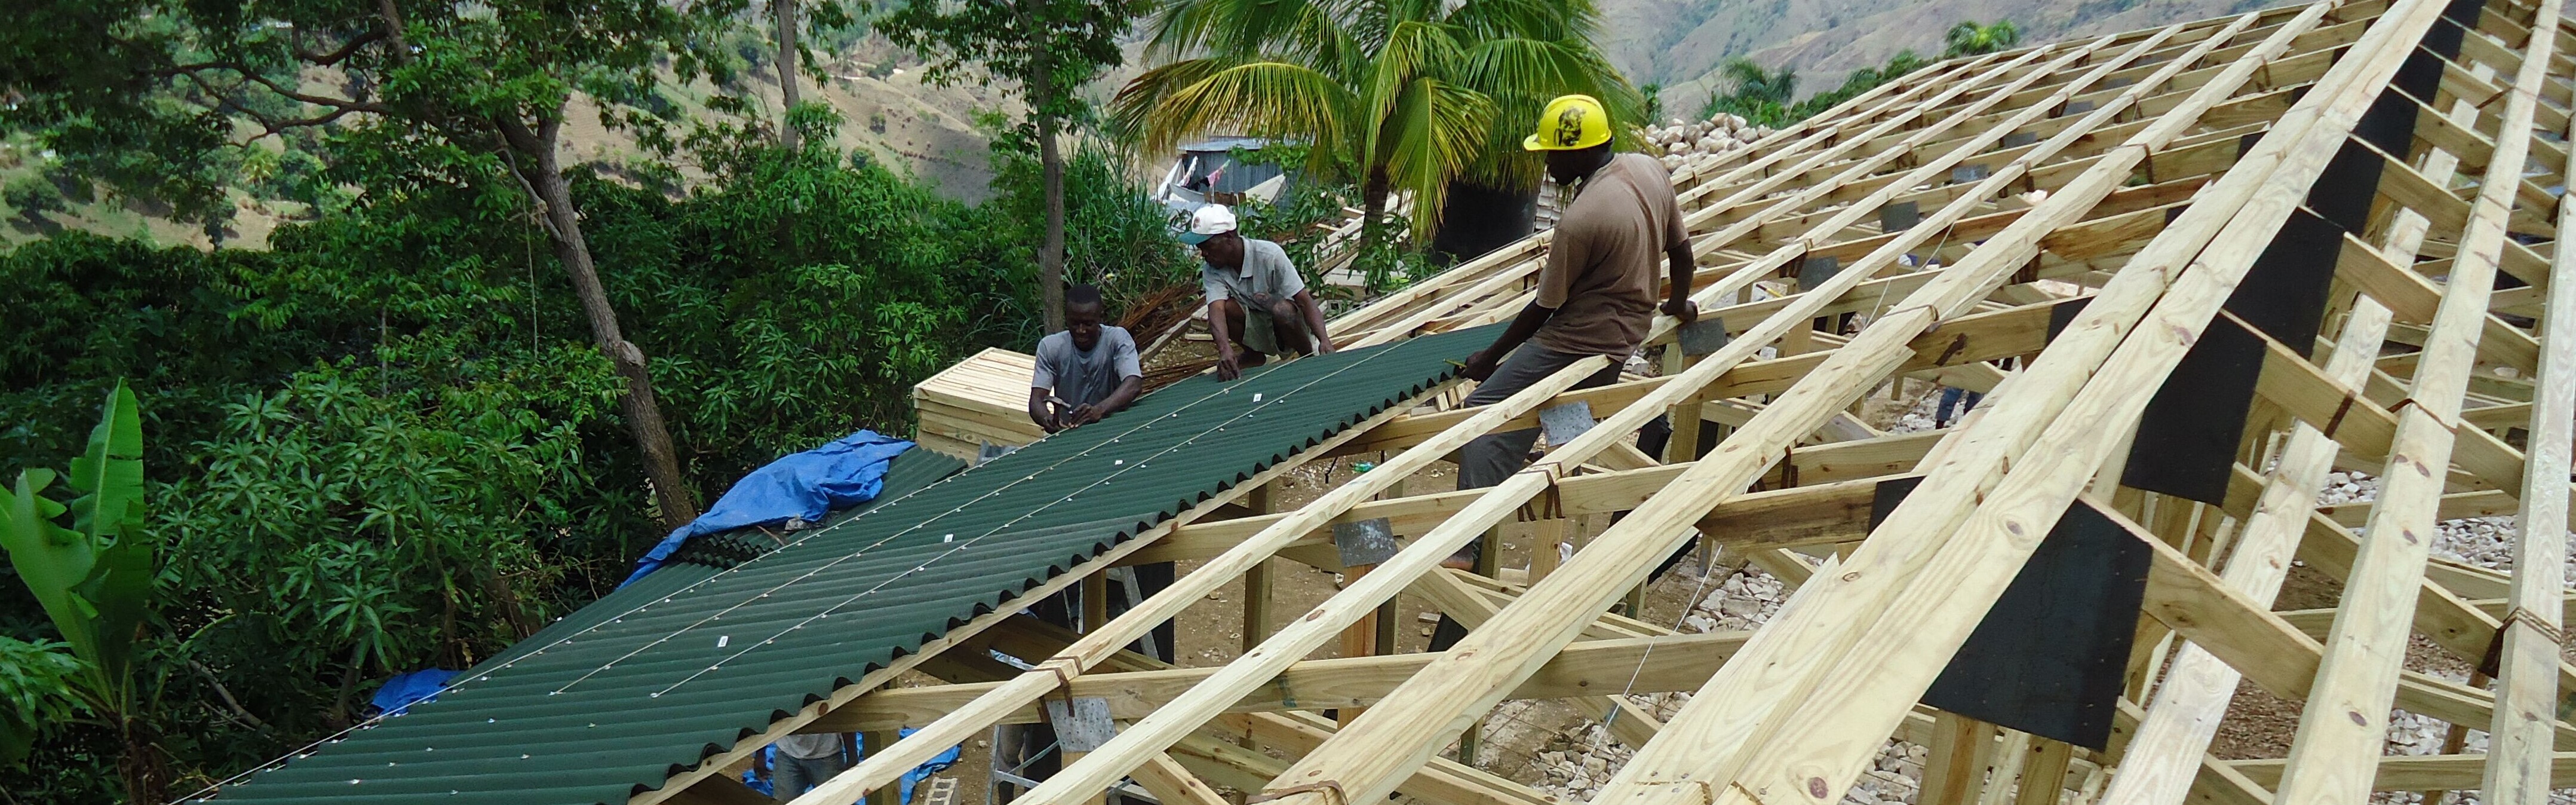 Hilfsprojekt in Haiti: Arbeiter beim Bau einer Schule